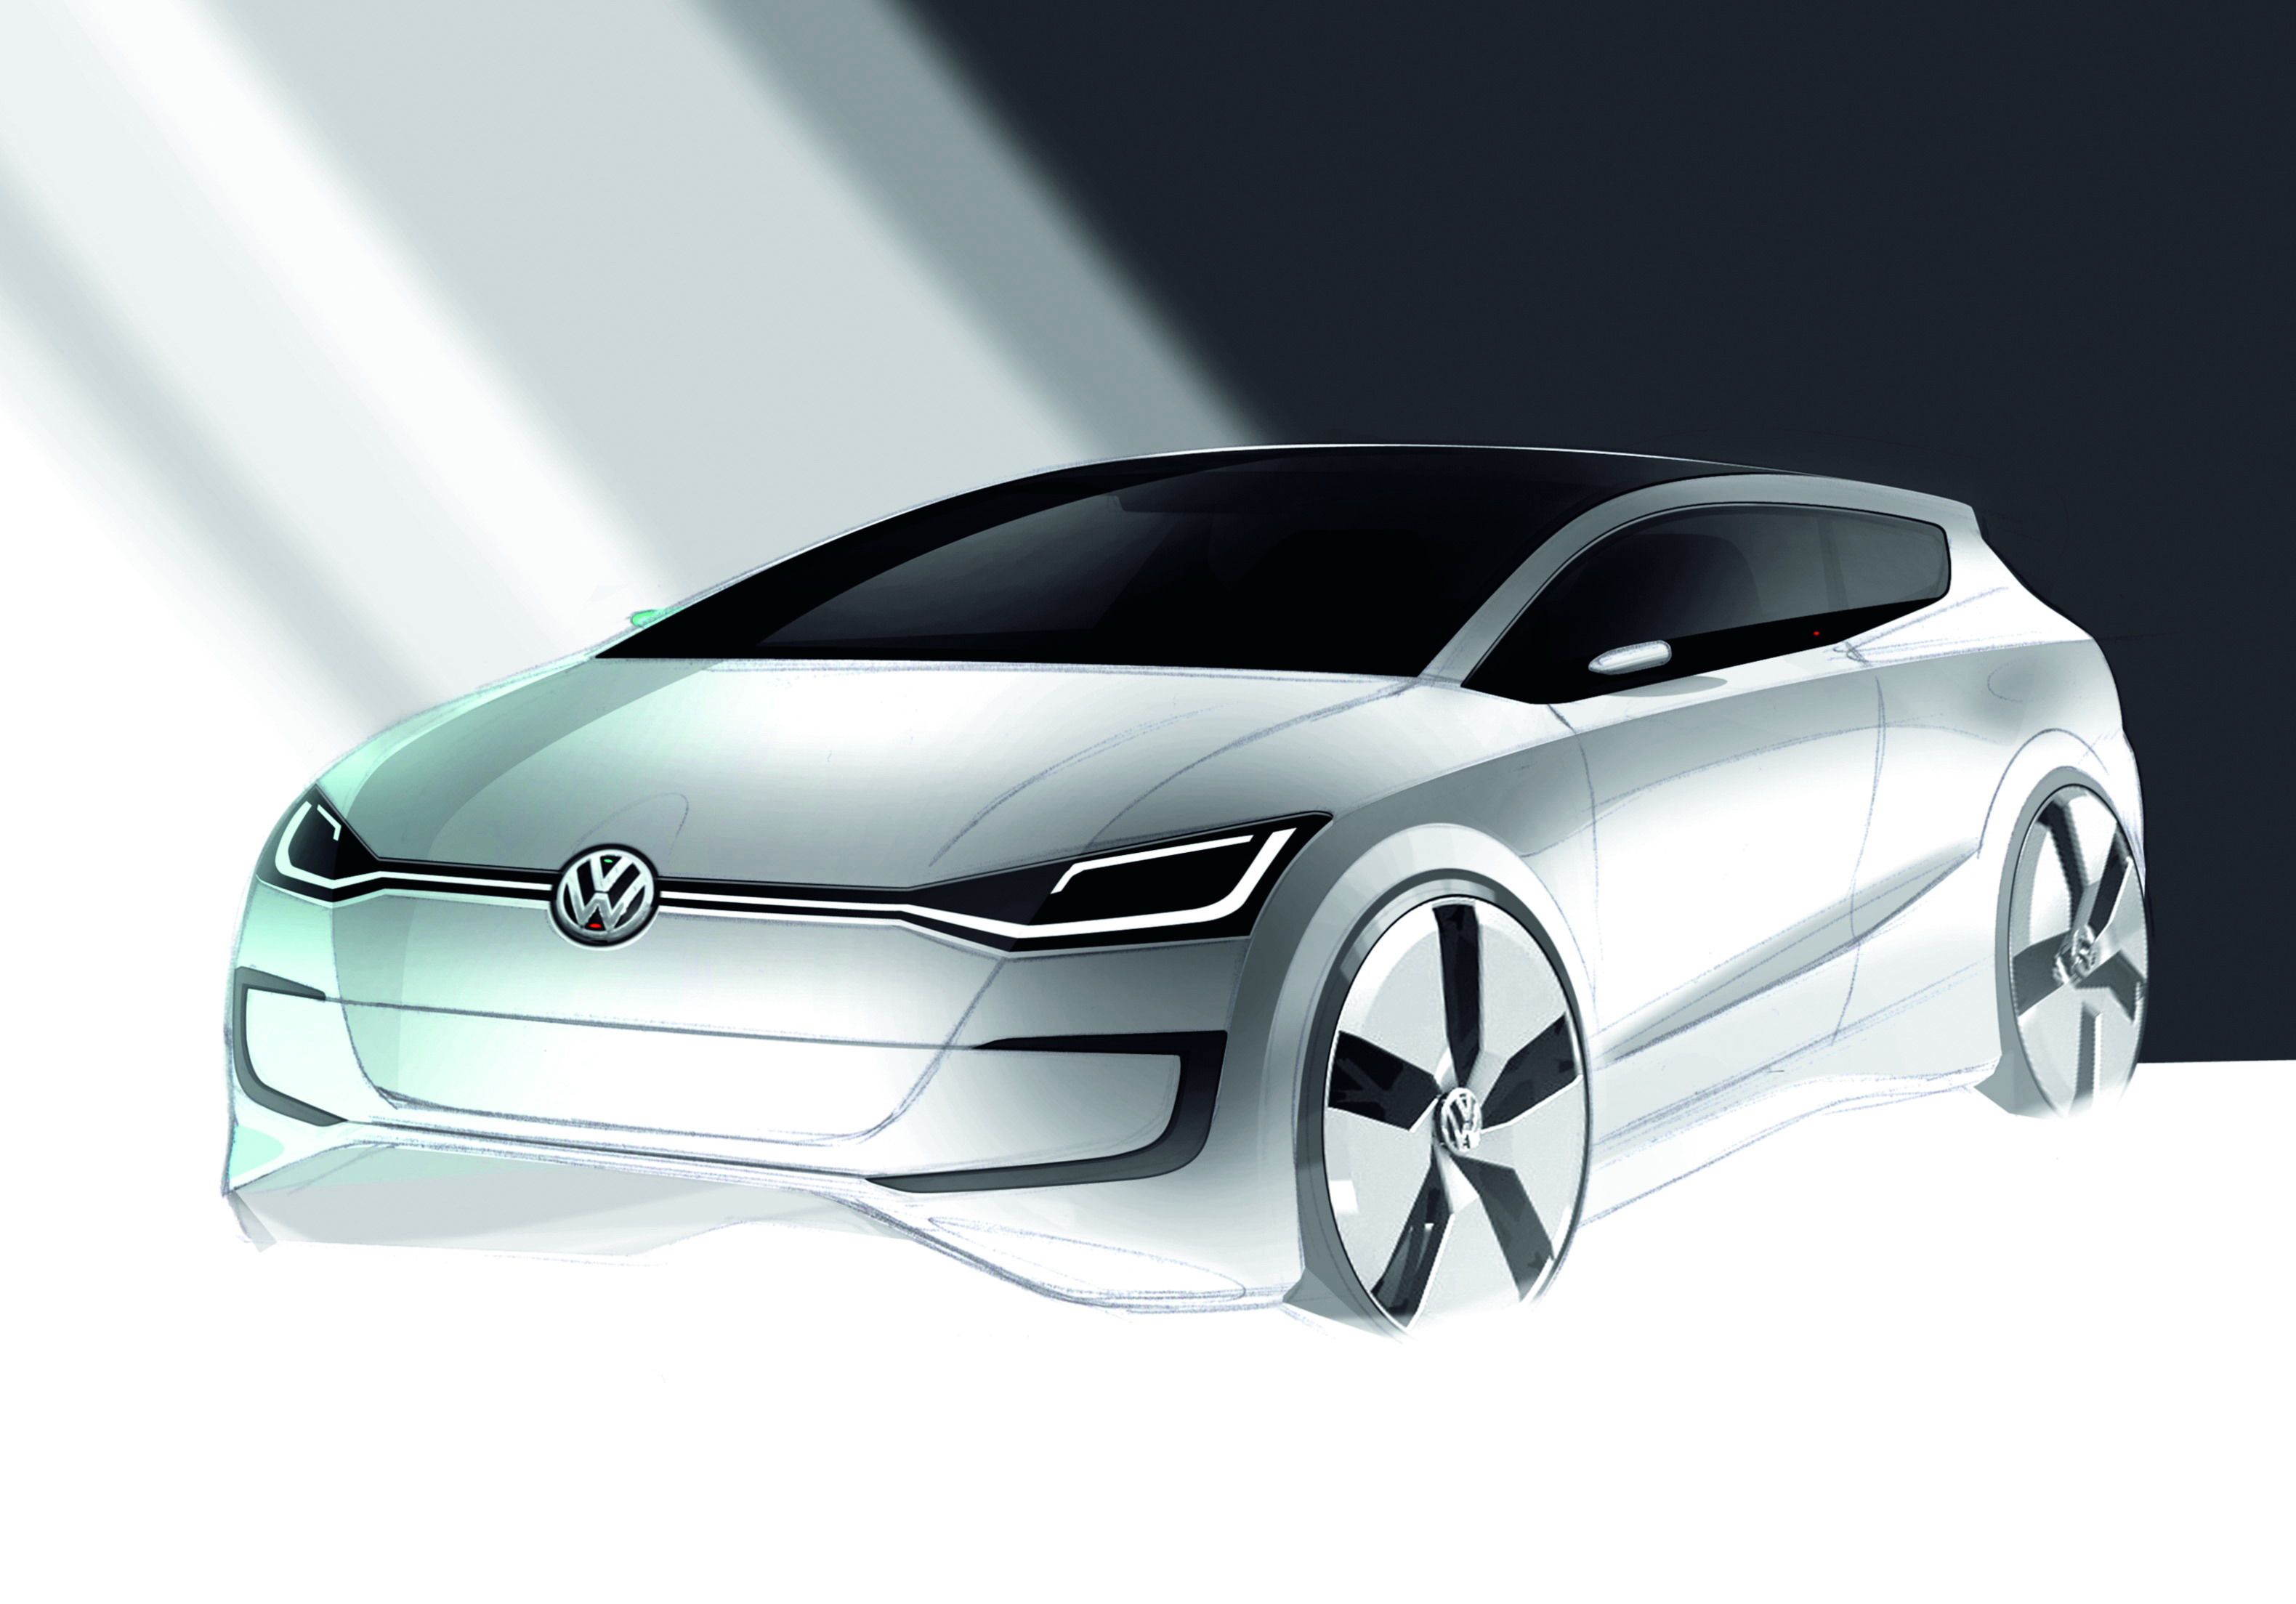 2010 Volkswagen Up! Lite concept